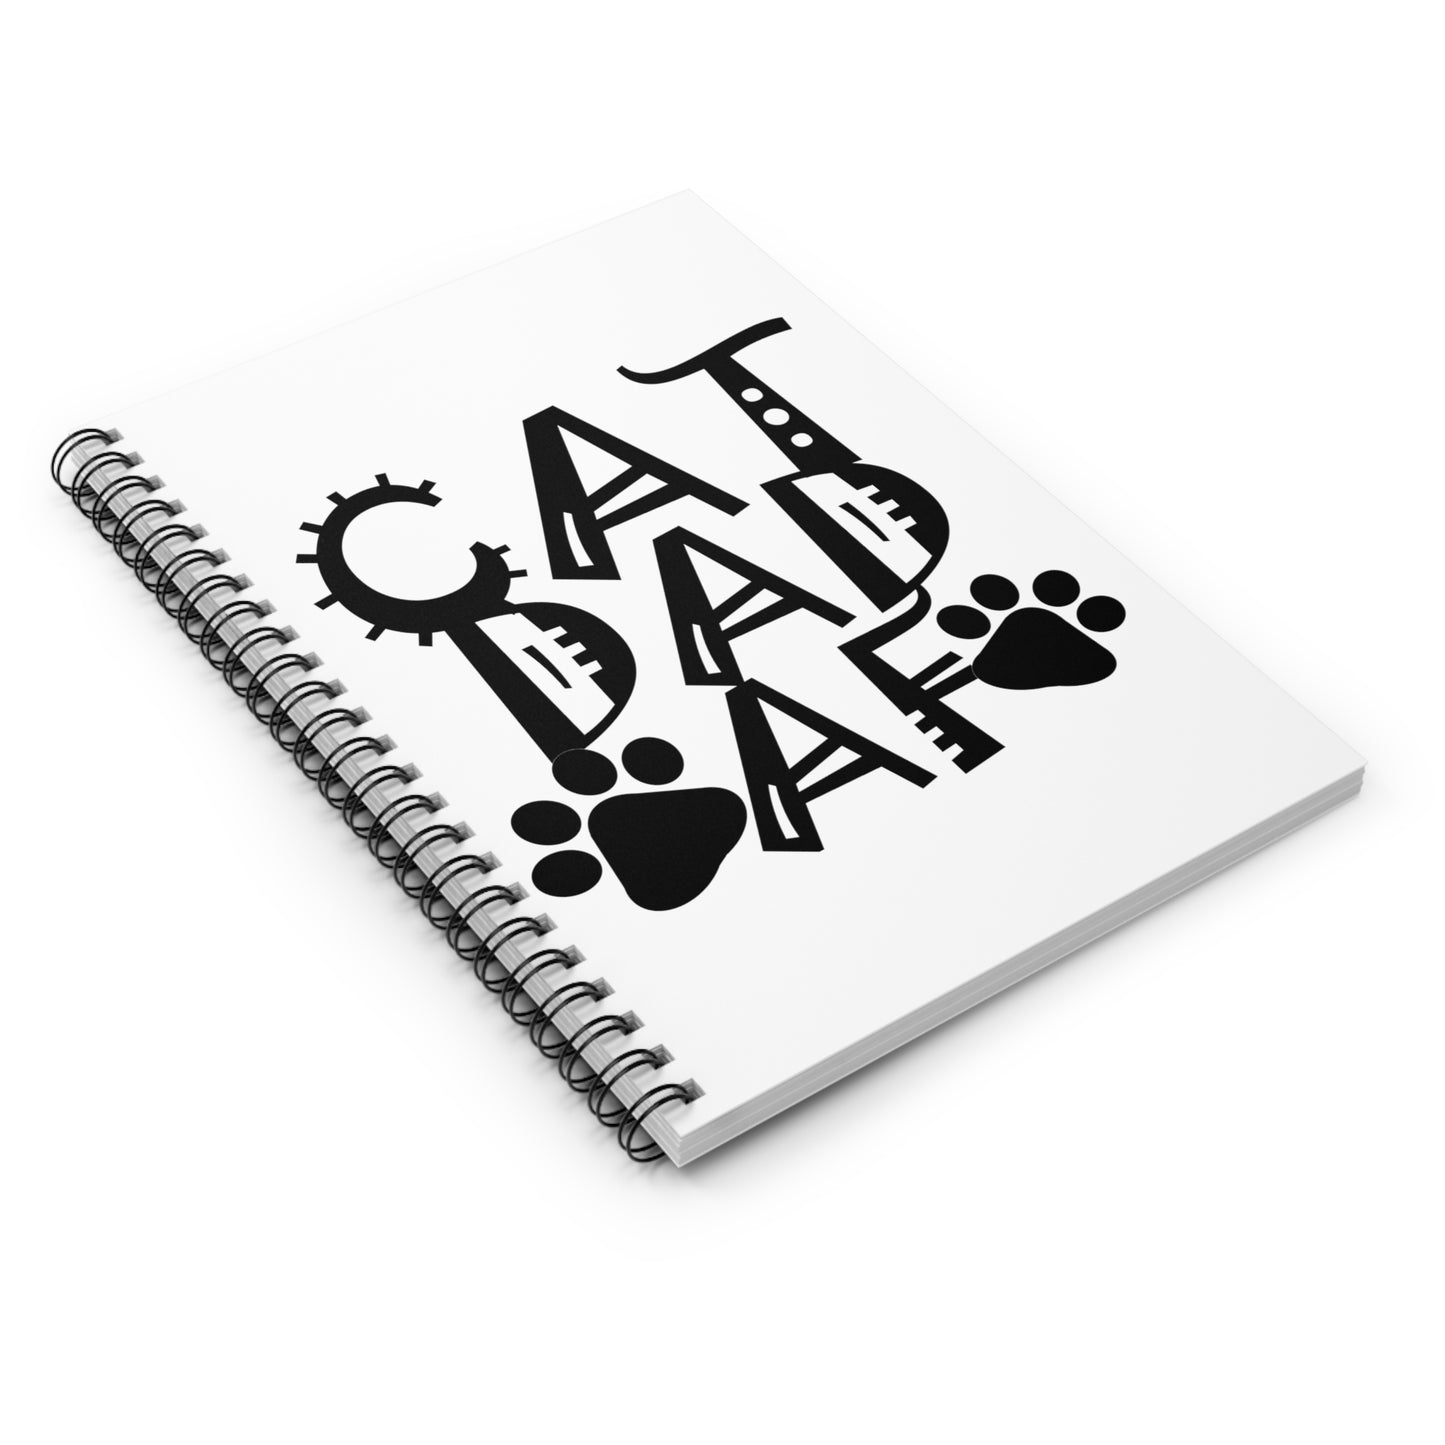 Cat Dad AF Spiral Notebook - Ruled Line